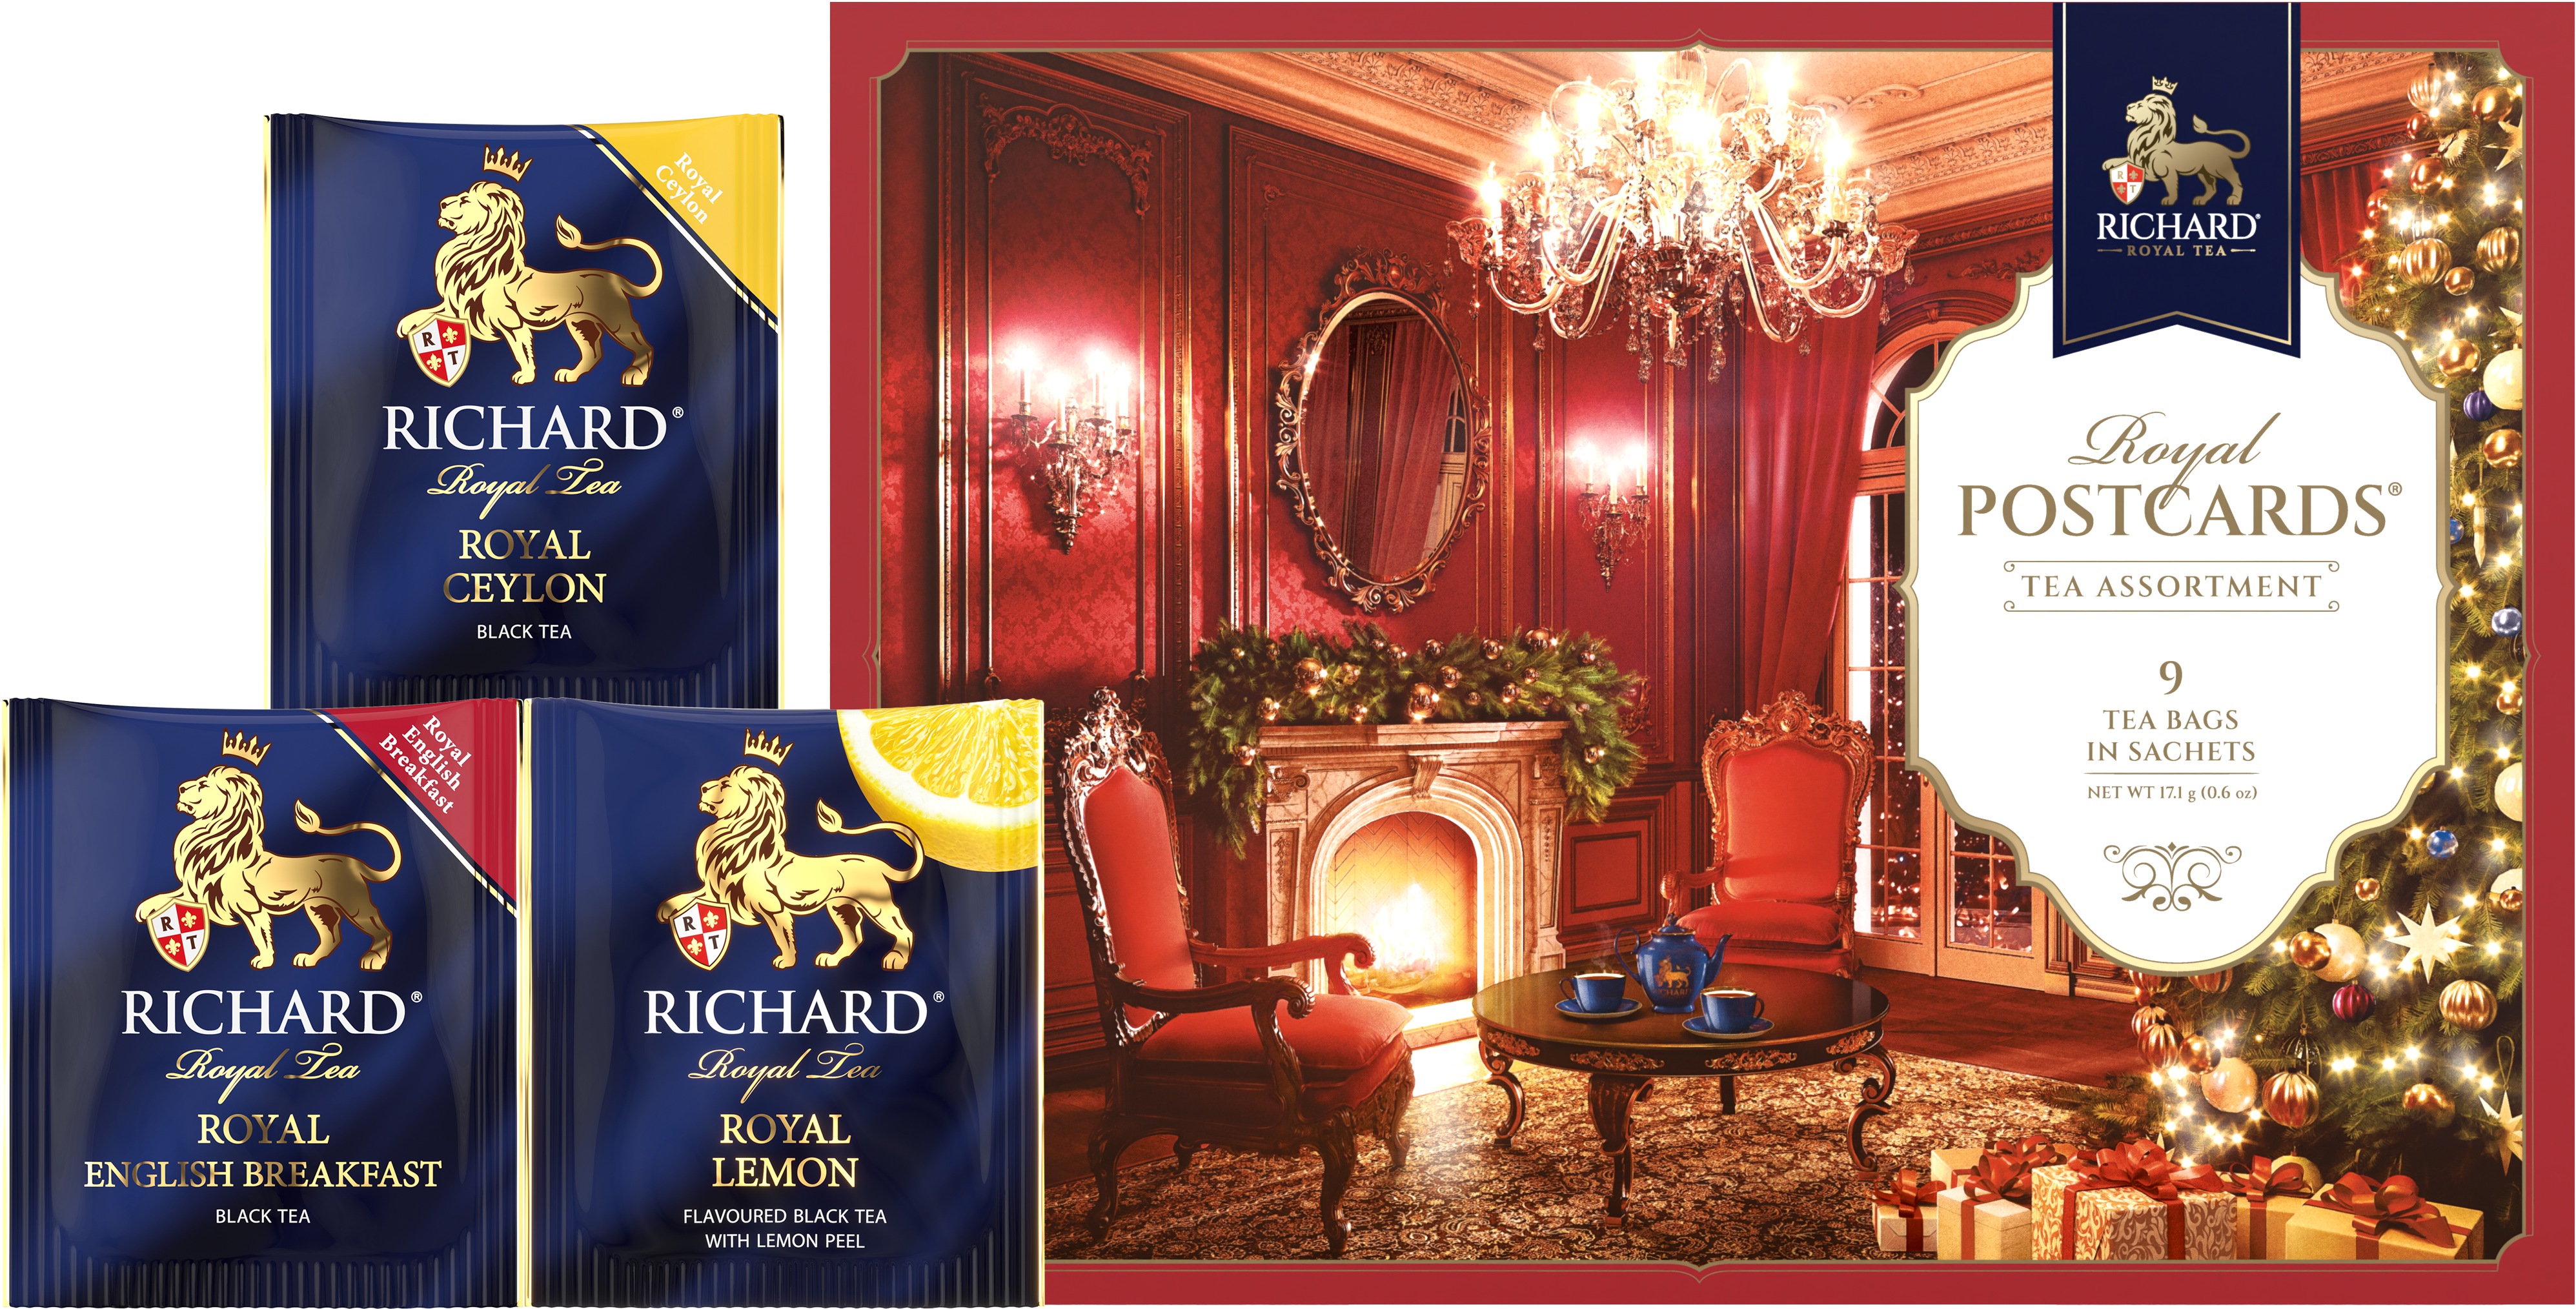 Richard Royal Királyi Képeslap, Karácsonyi válogatás - Piros, filteres fekete tea-válogatás, 17,1g